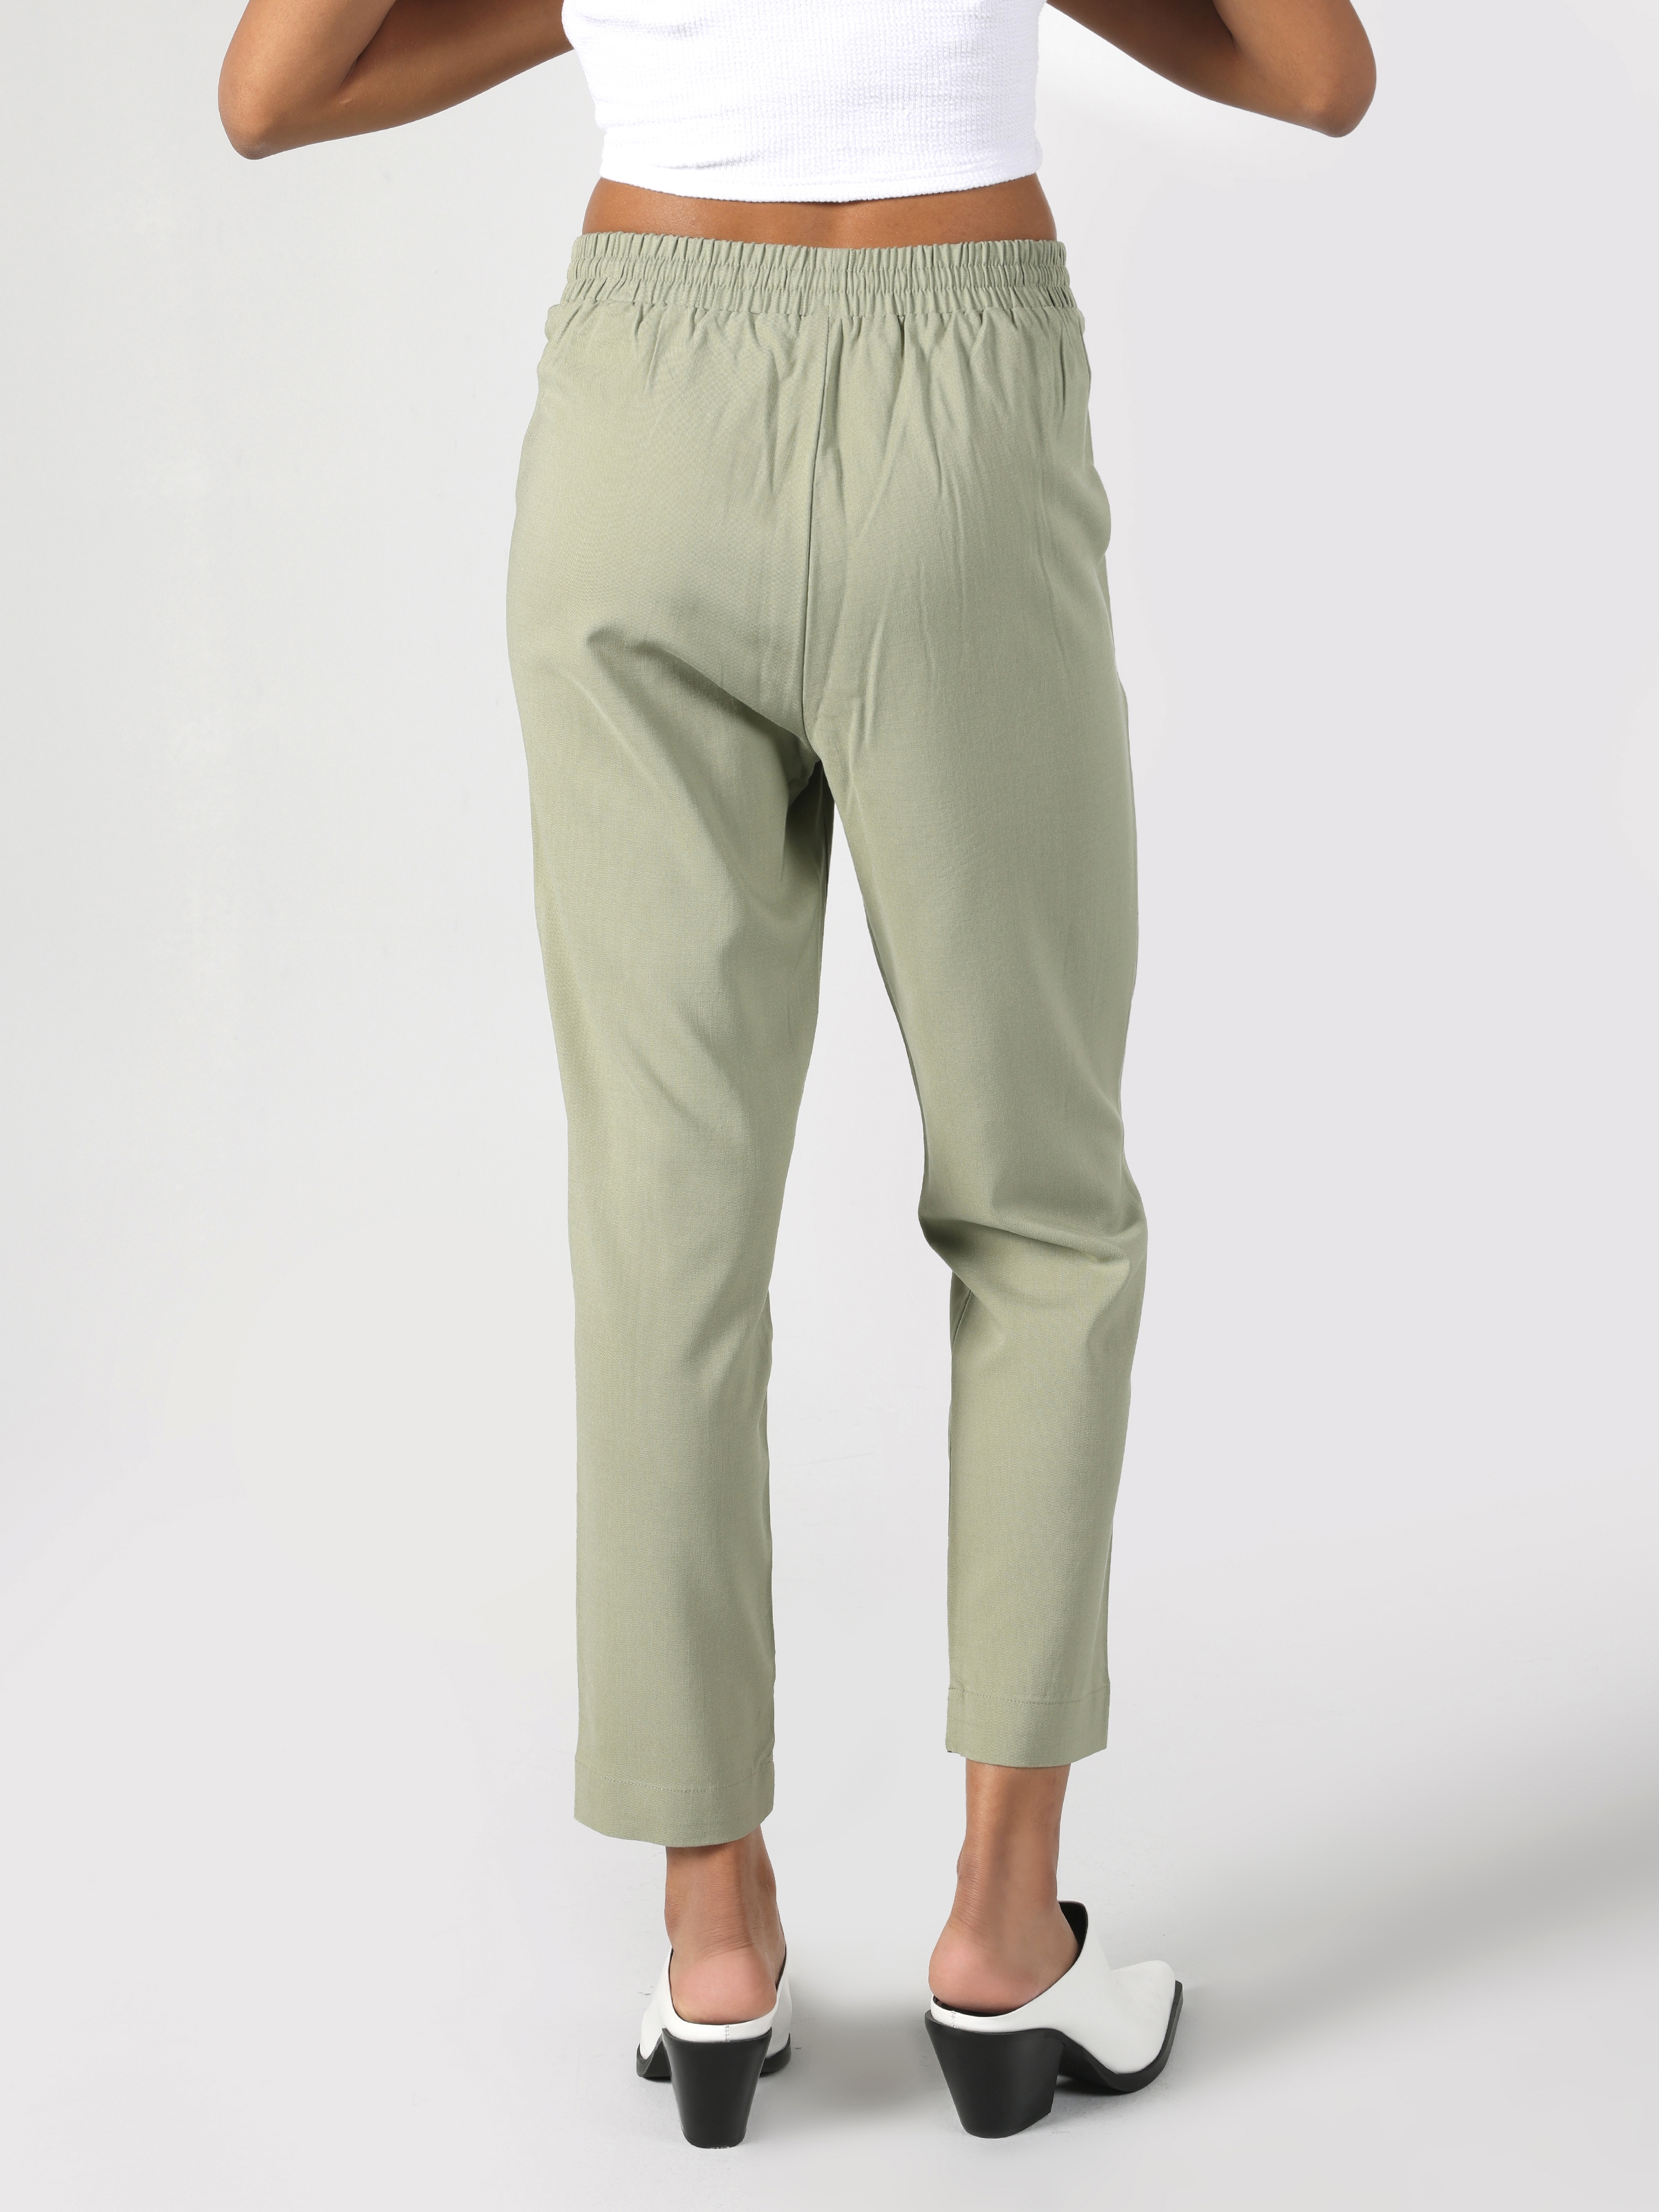 Afficher les détails de Pantalon Femme Coupe Droite Taille Basse Coupe Droite Vert